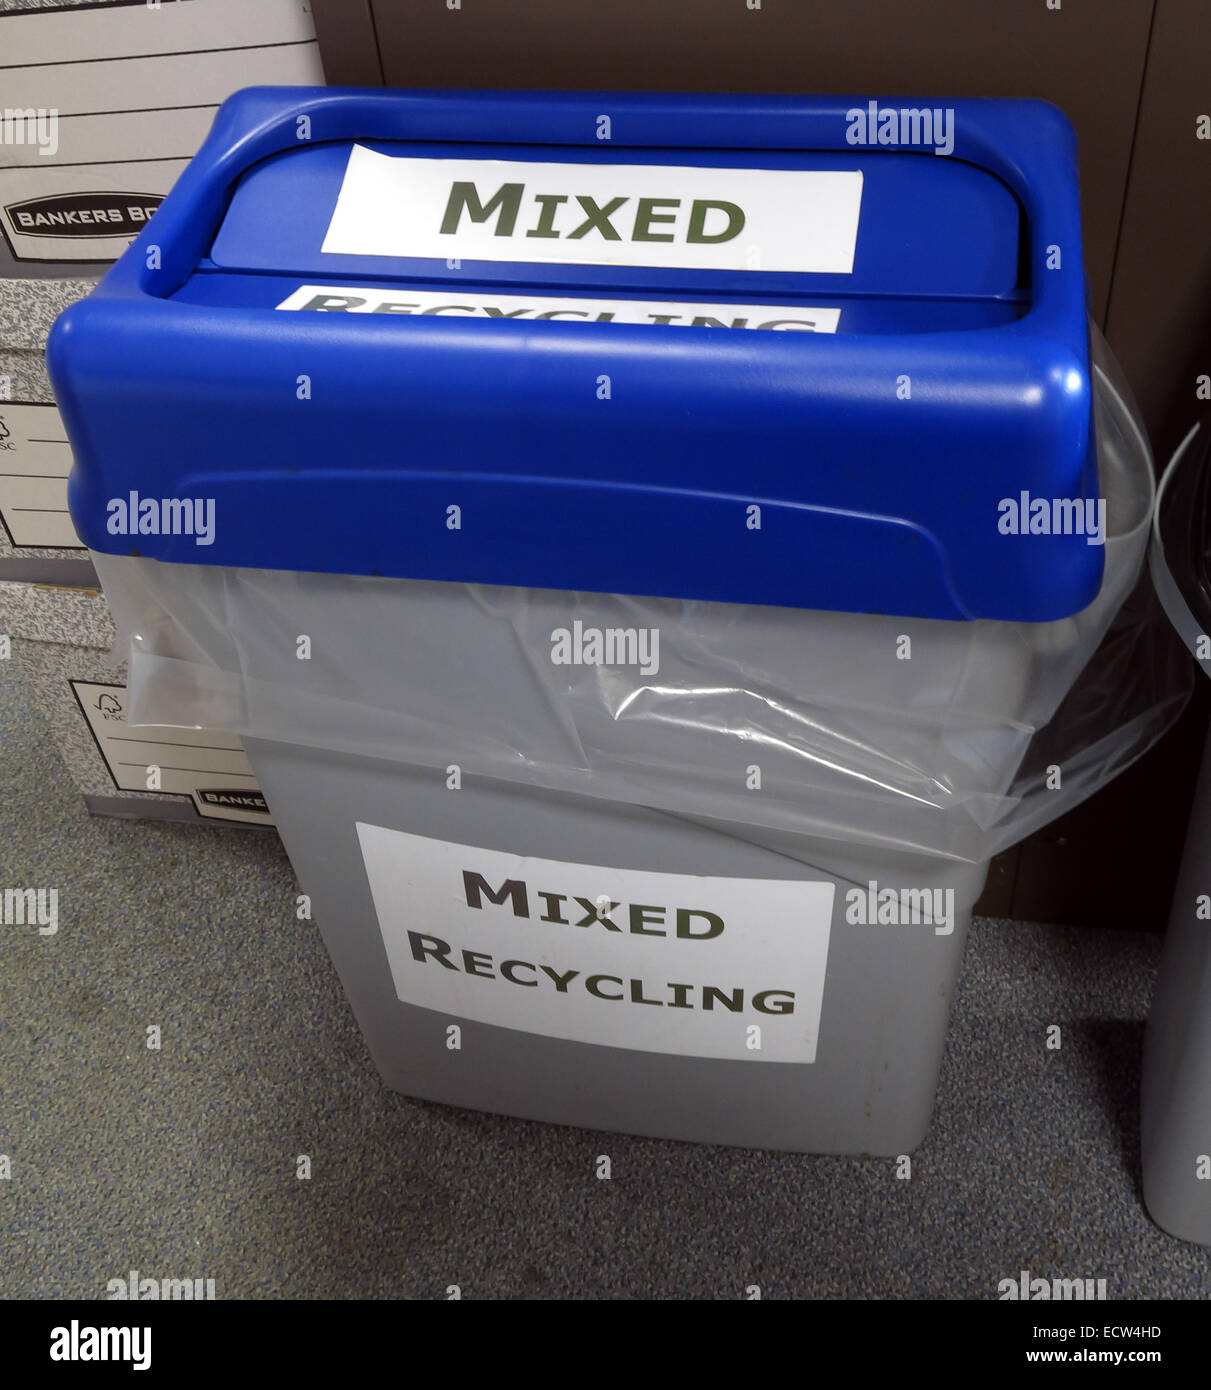 Bac de recyclage mixte en bleu et gris pour les déchets. Qui sait quoi mettre dans ces ? Banque D'Images